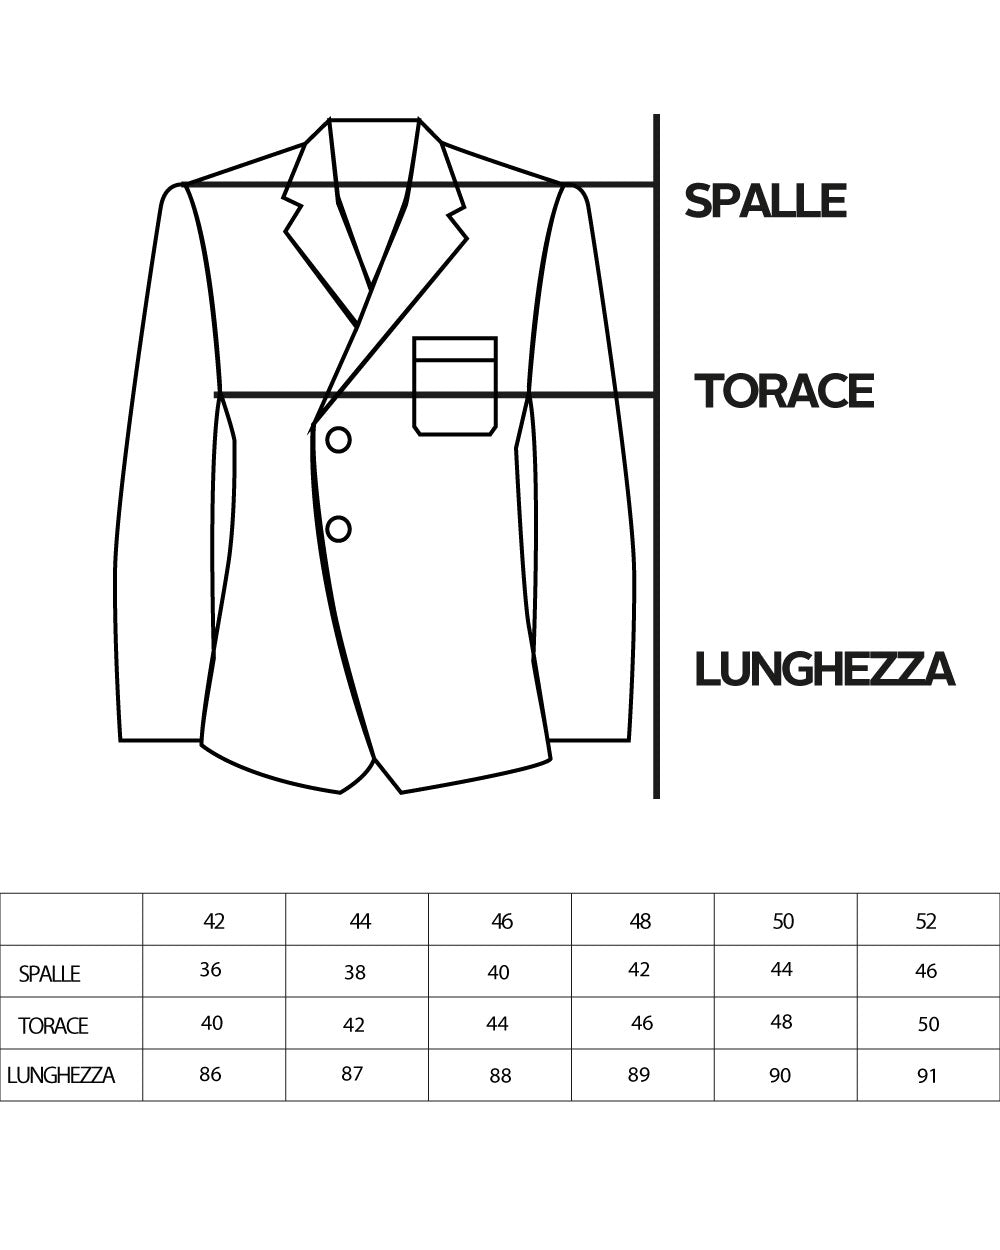 Double-breasted Coat Men Jacket With Belt Long Black Jacket Elegant Jacket GIOSAL-G2982A